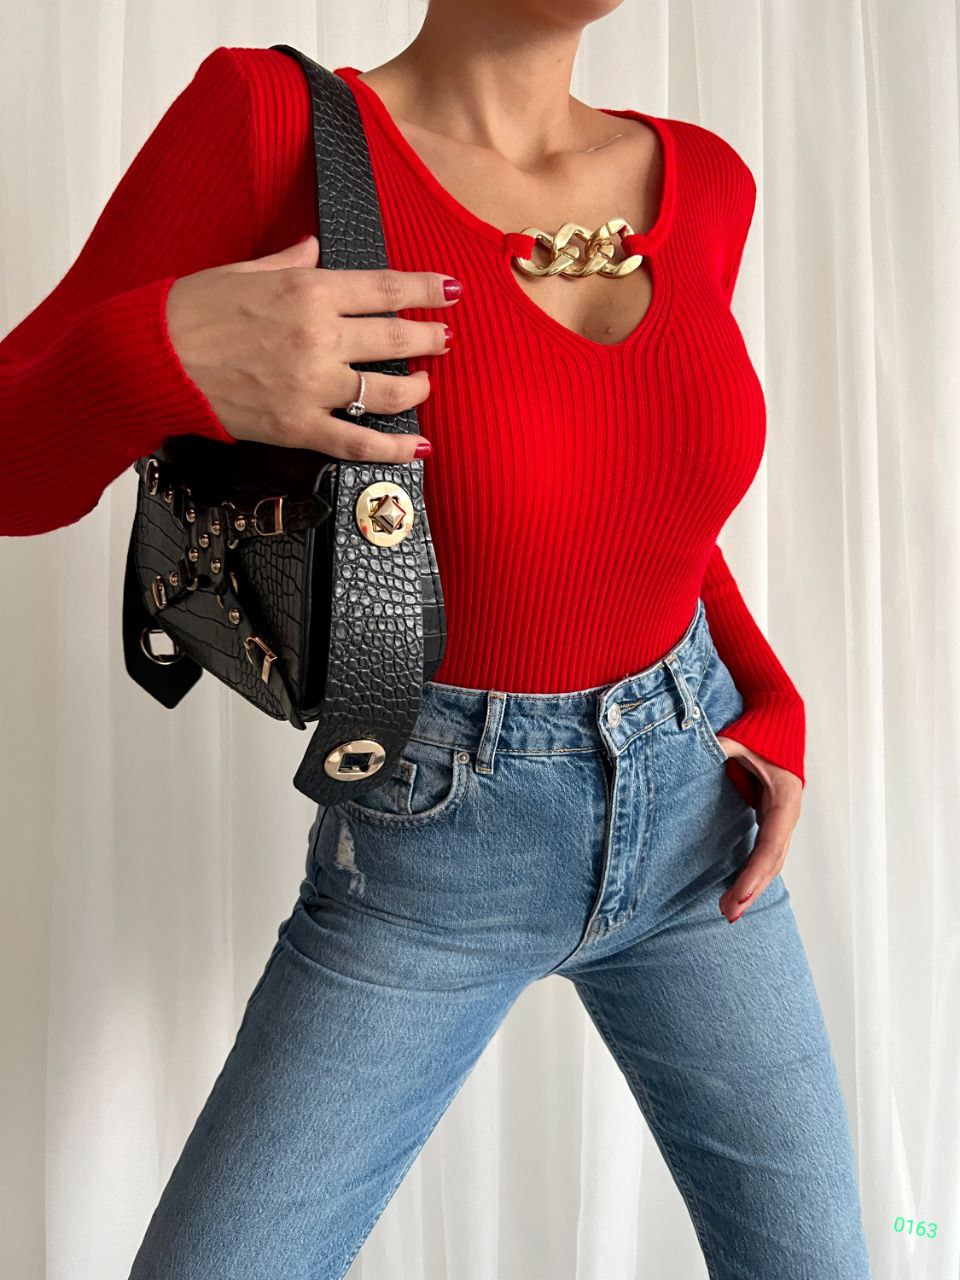 Дамска блуза RENI  https://bvseductive.com/products/womans-s-shirts-tops-reni-1  ефектна дамска блуза в червен цвят съставена от мека и приятна материя модел с дълги ръкави и вталена кройка с интересен акцент на деколтето страхотен избор за Вашата тренди визия подходяща за S/M